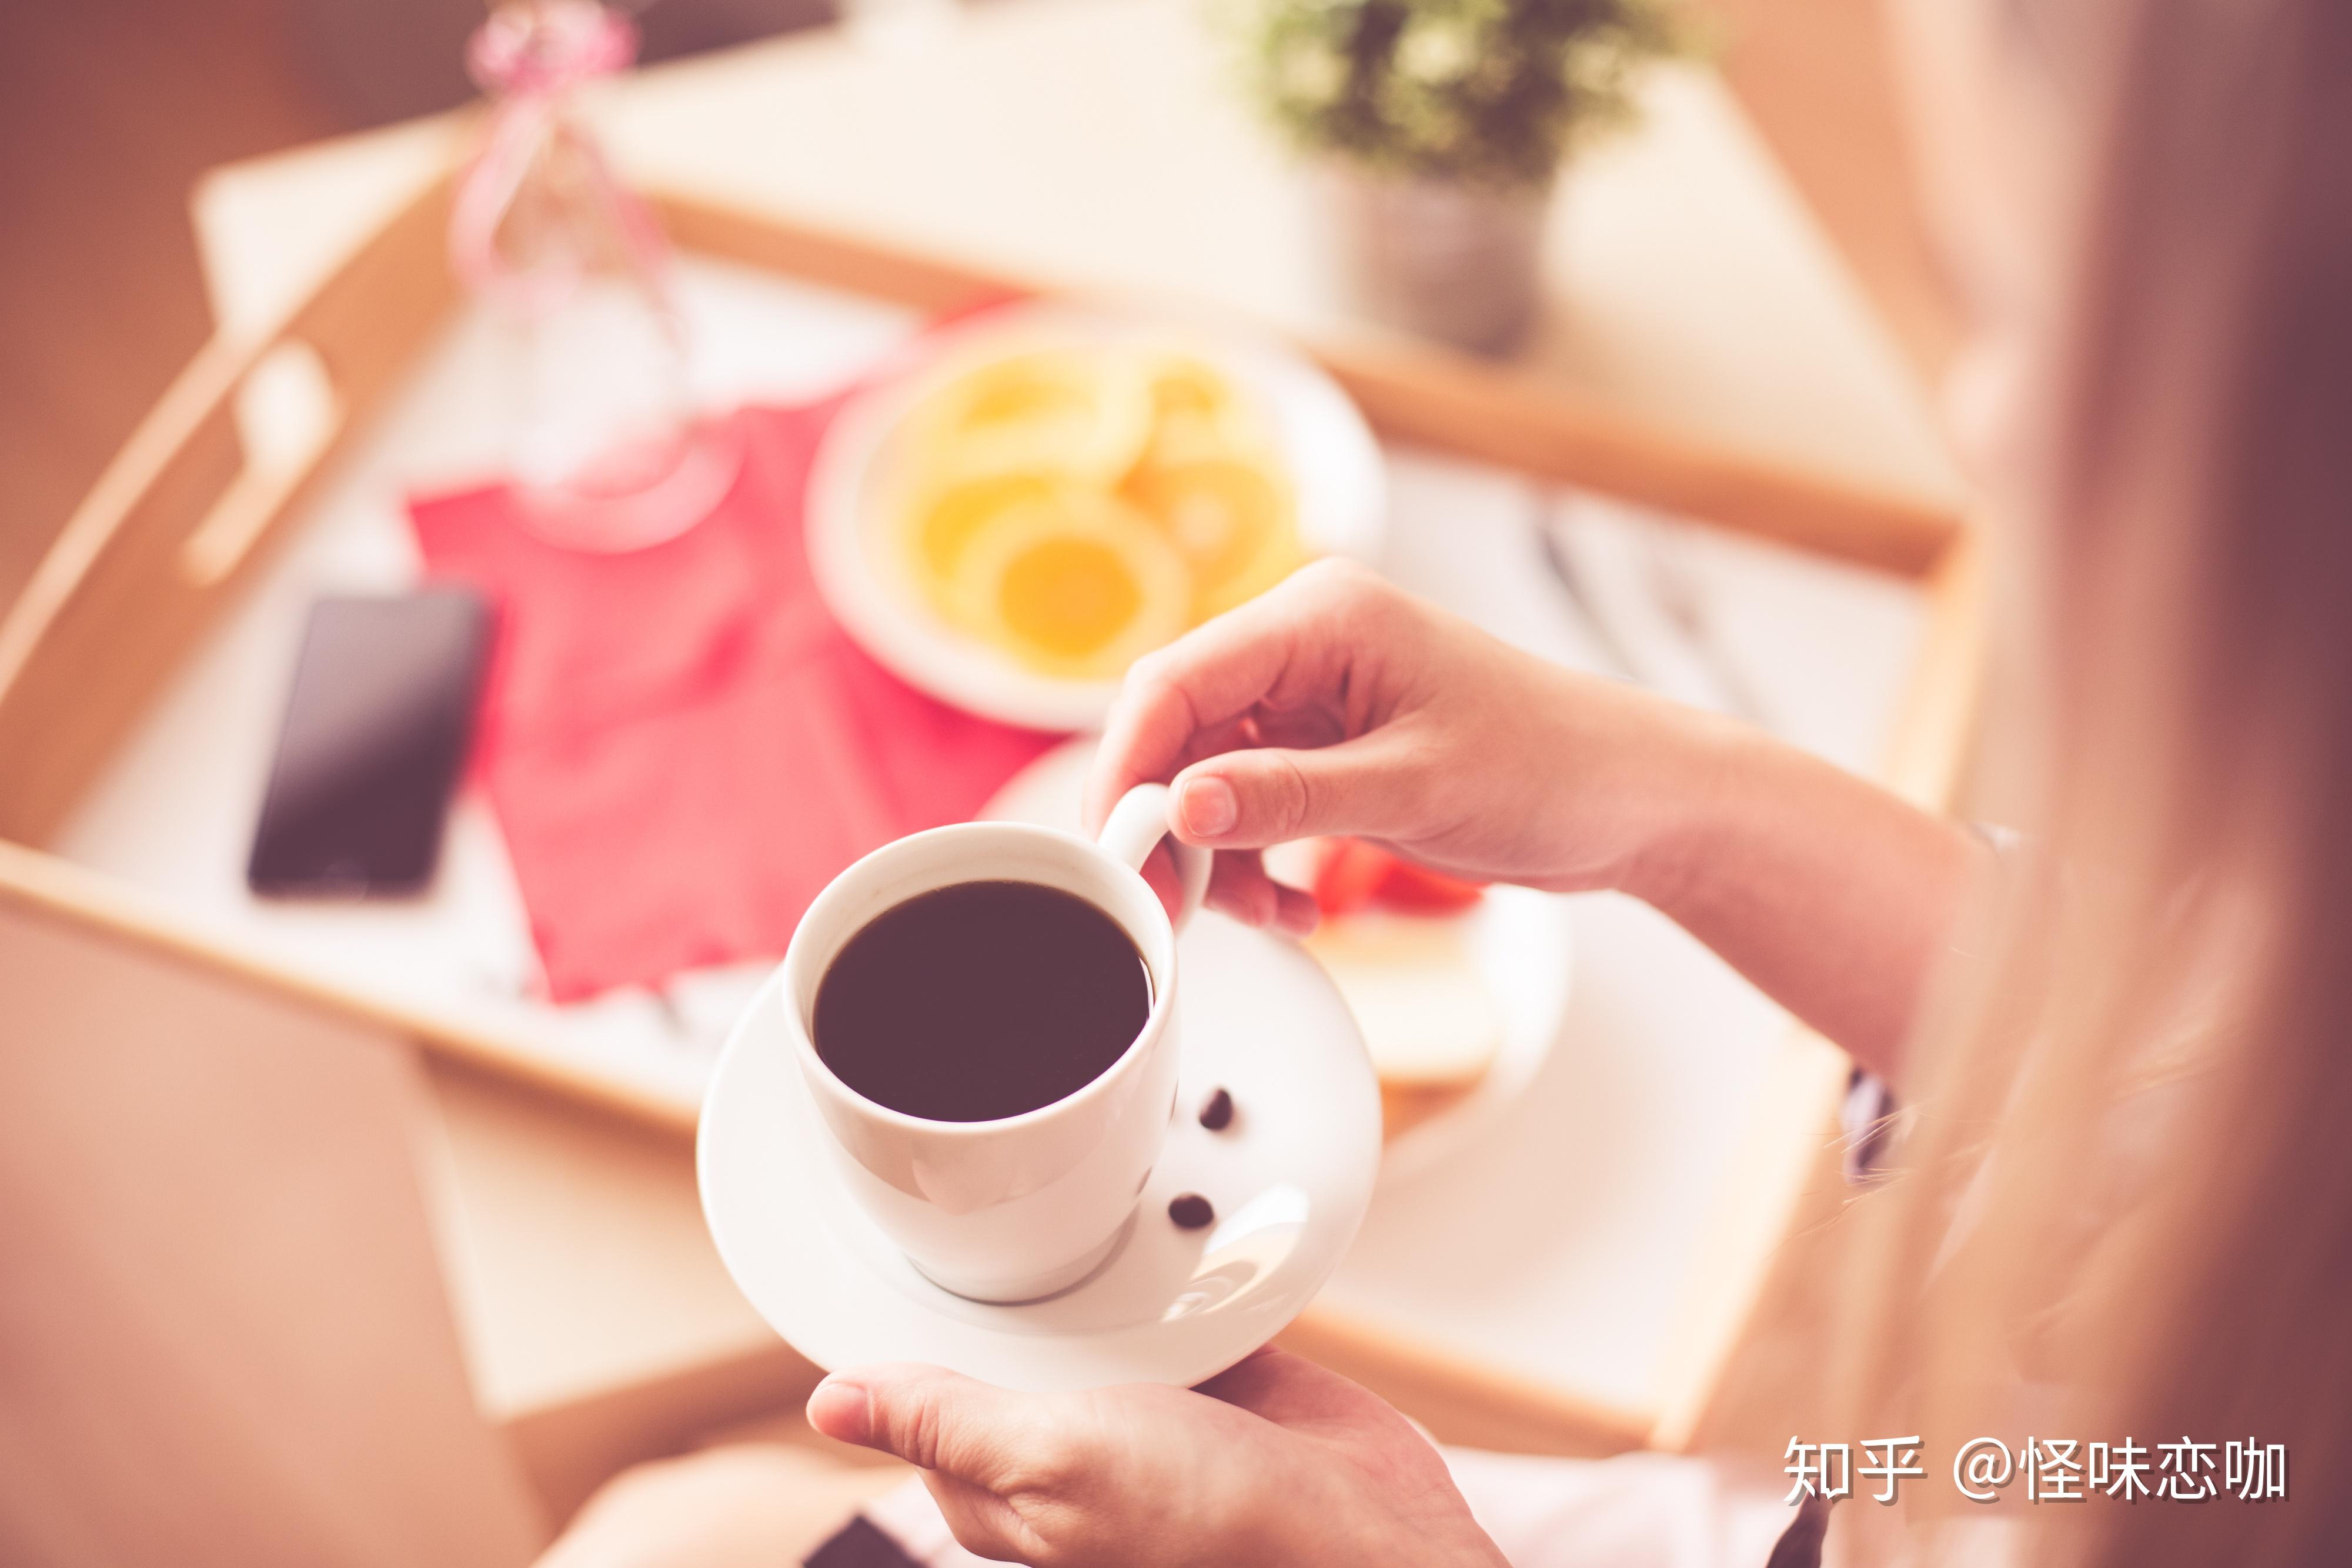 图片素材 : 咖啡, 早上, 餐饮, 放松, 生产, 喝, 生活方式, 早餐, 味道 1920x2560 - - 757959 - 素材中国, 高清壁纸 - PxHere摄影图库